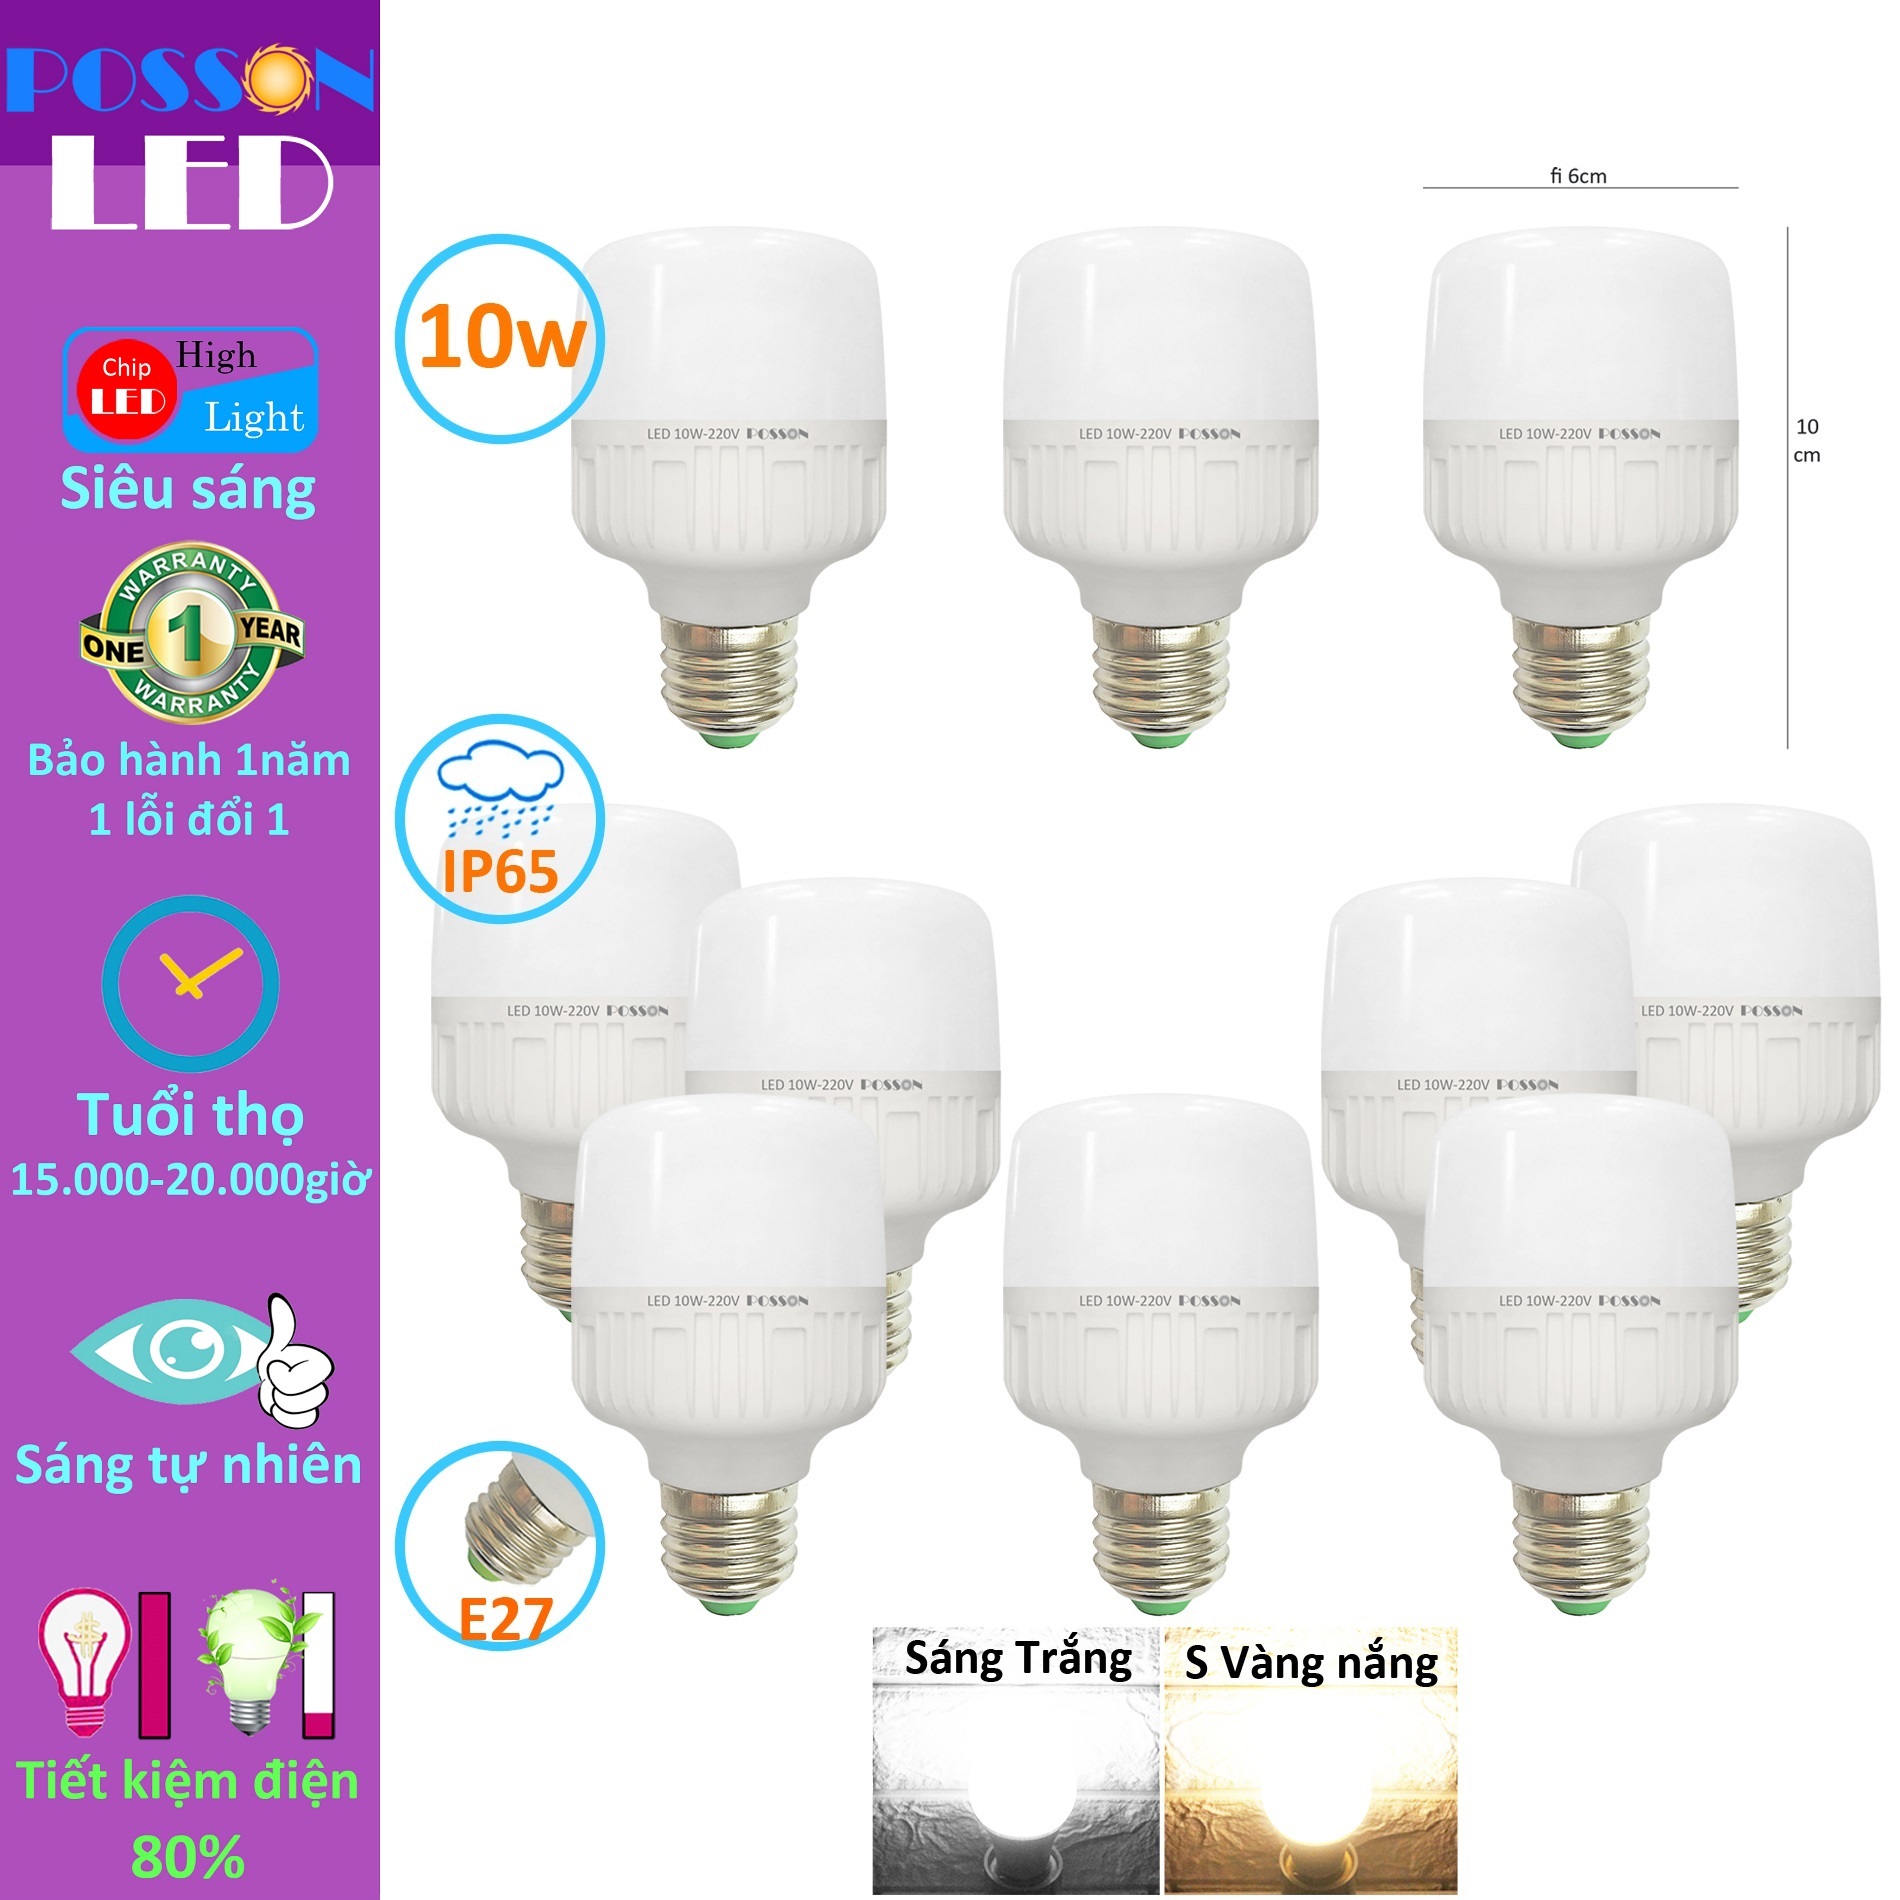 10 Bóng đèn Led trụ 9w 10w bup trụ T60 bulb tiết kiệm điện kín chống nước Posson LC-10x